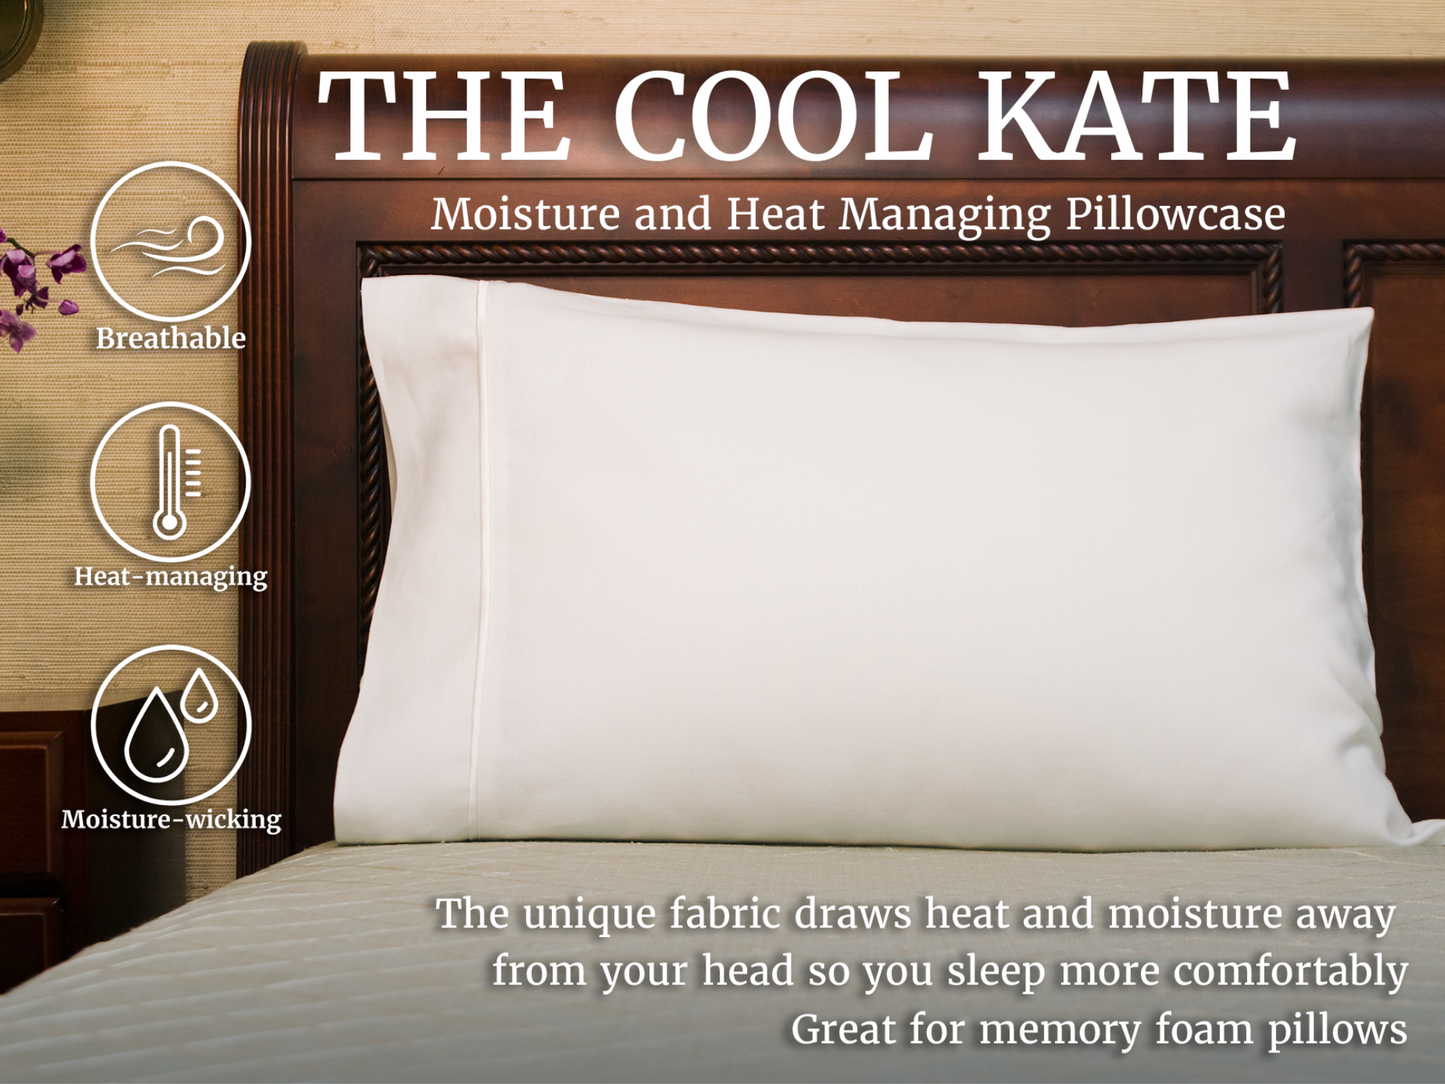 La taie d'oreiller "Cool Kate" qui évacue l'humidité et gère la chaleur